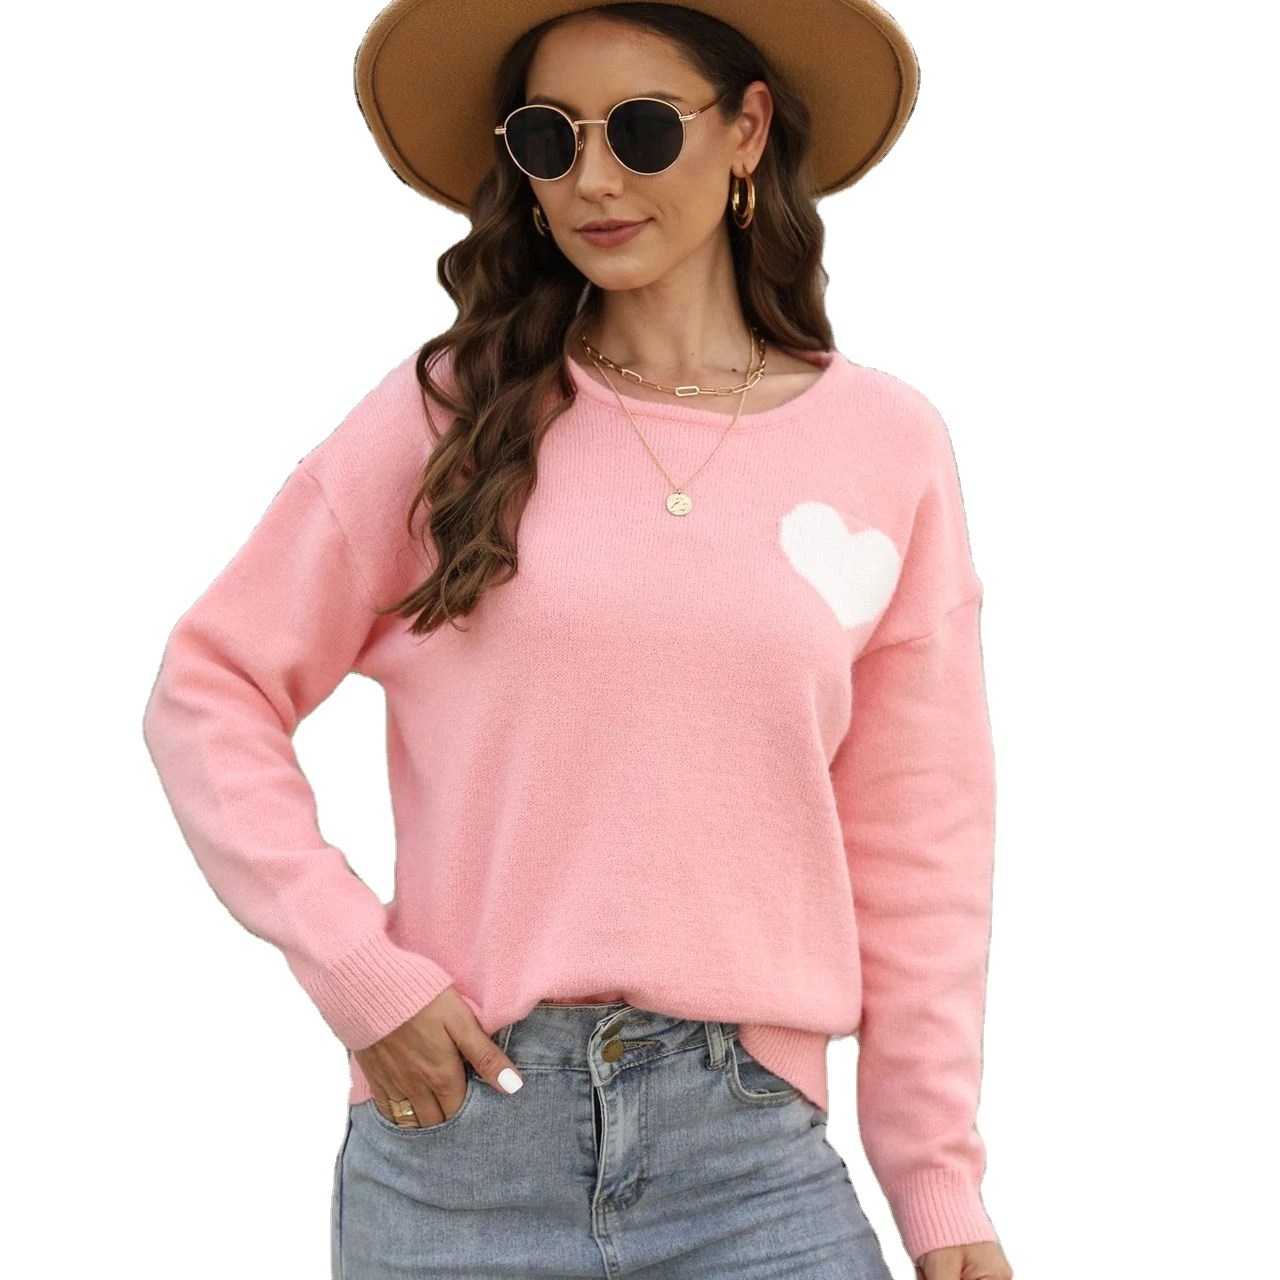 Pullover Sweater Heart, Women Sweaters Heart Sleeve